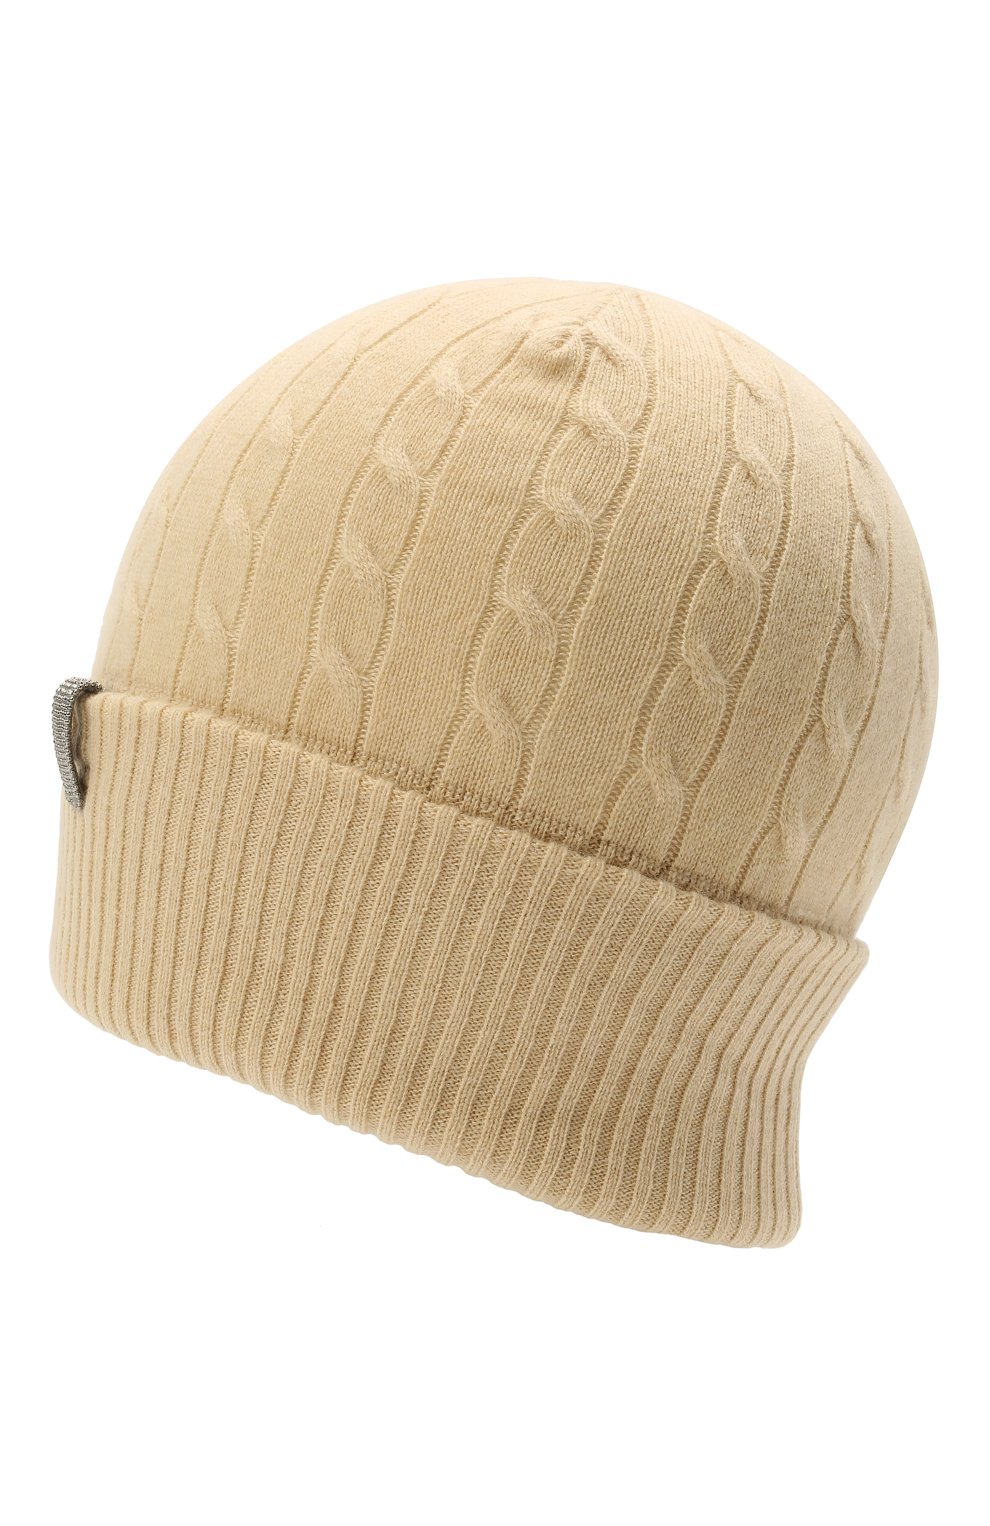 Женская кашемировая шапка BRUNELLO CUCINELLI  цвета, арт. M12182889 | Фото 2 (Материал: Текстиль, Кашемир, Шерсть)